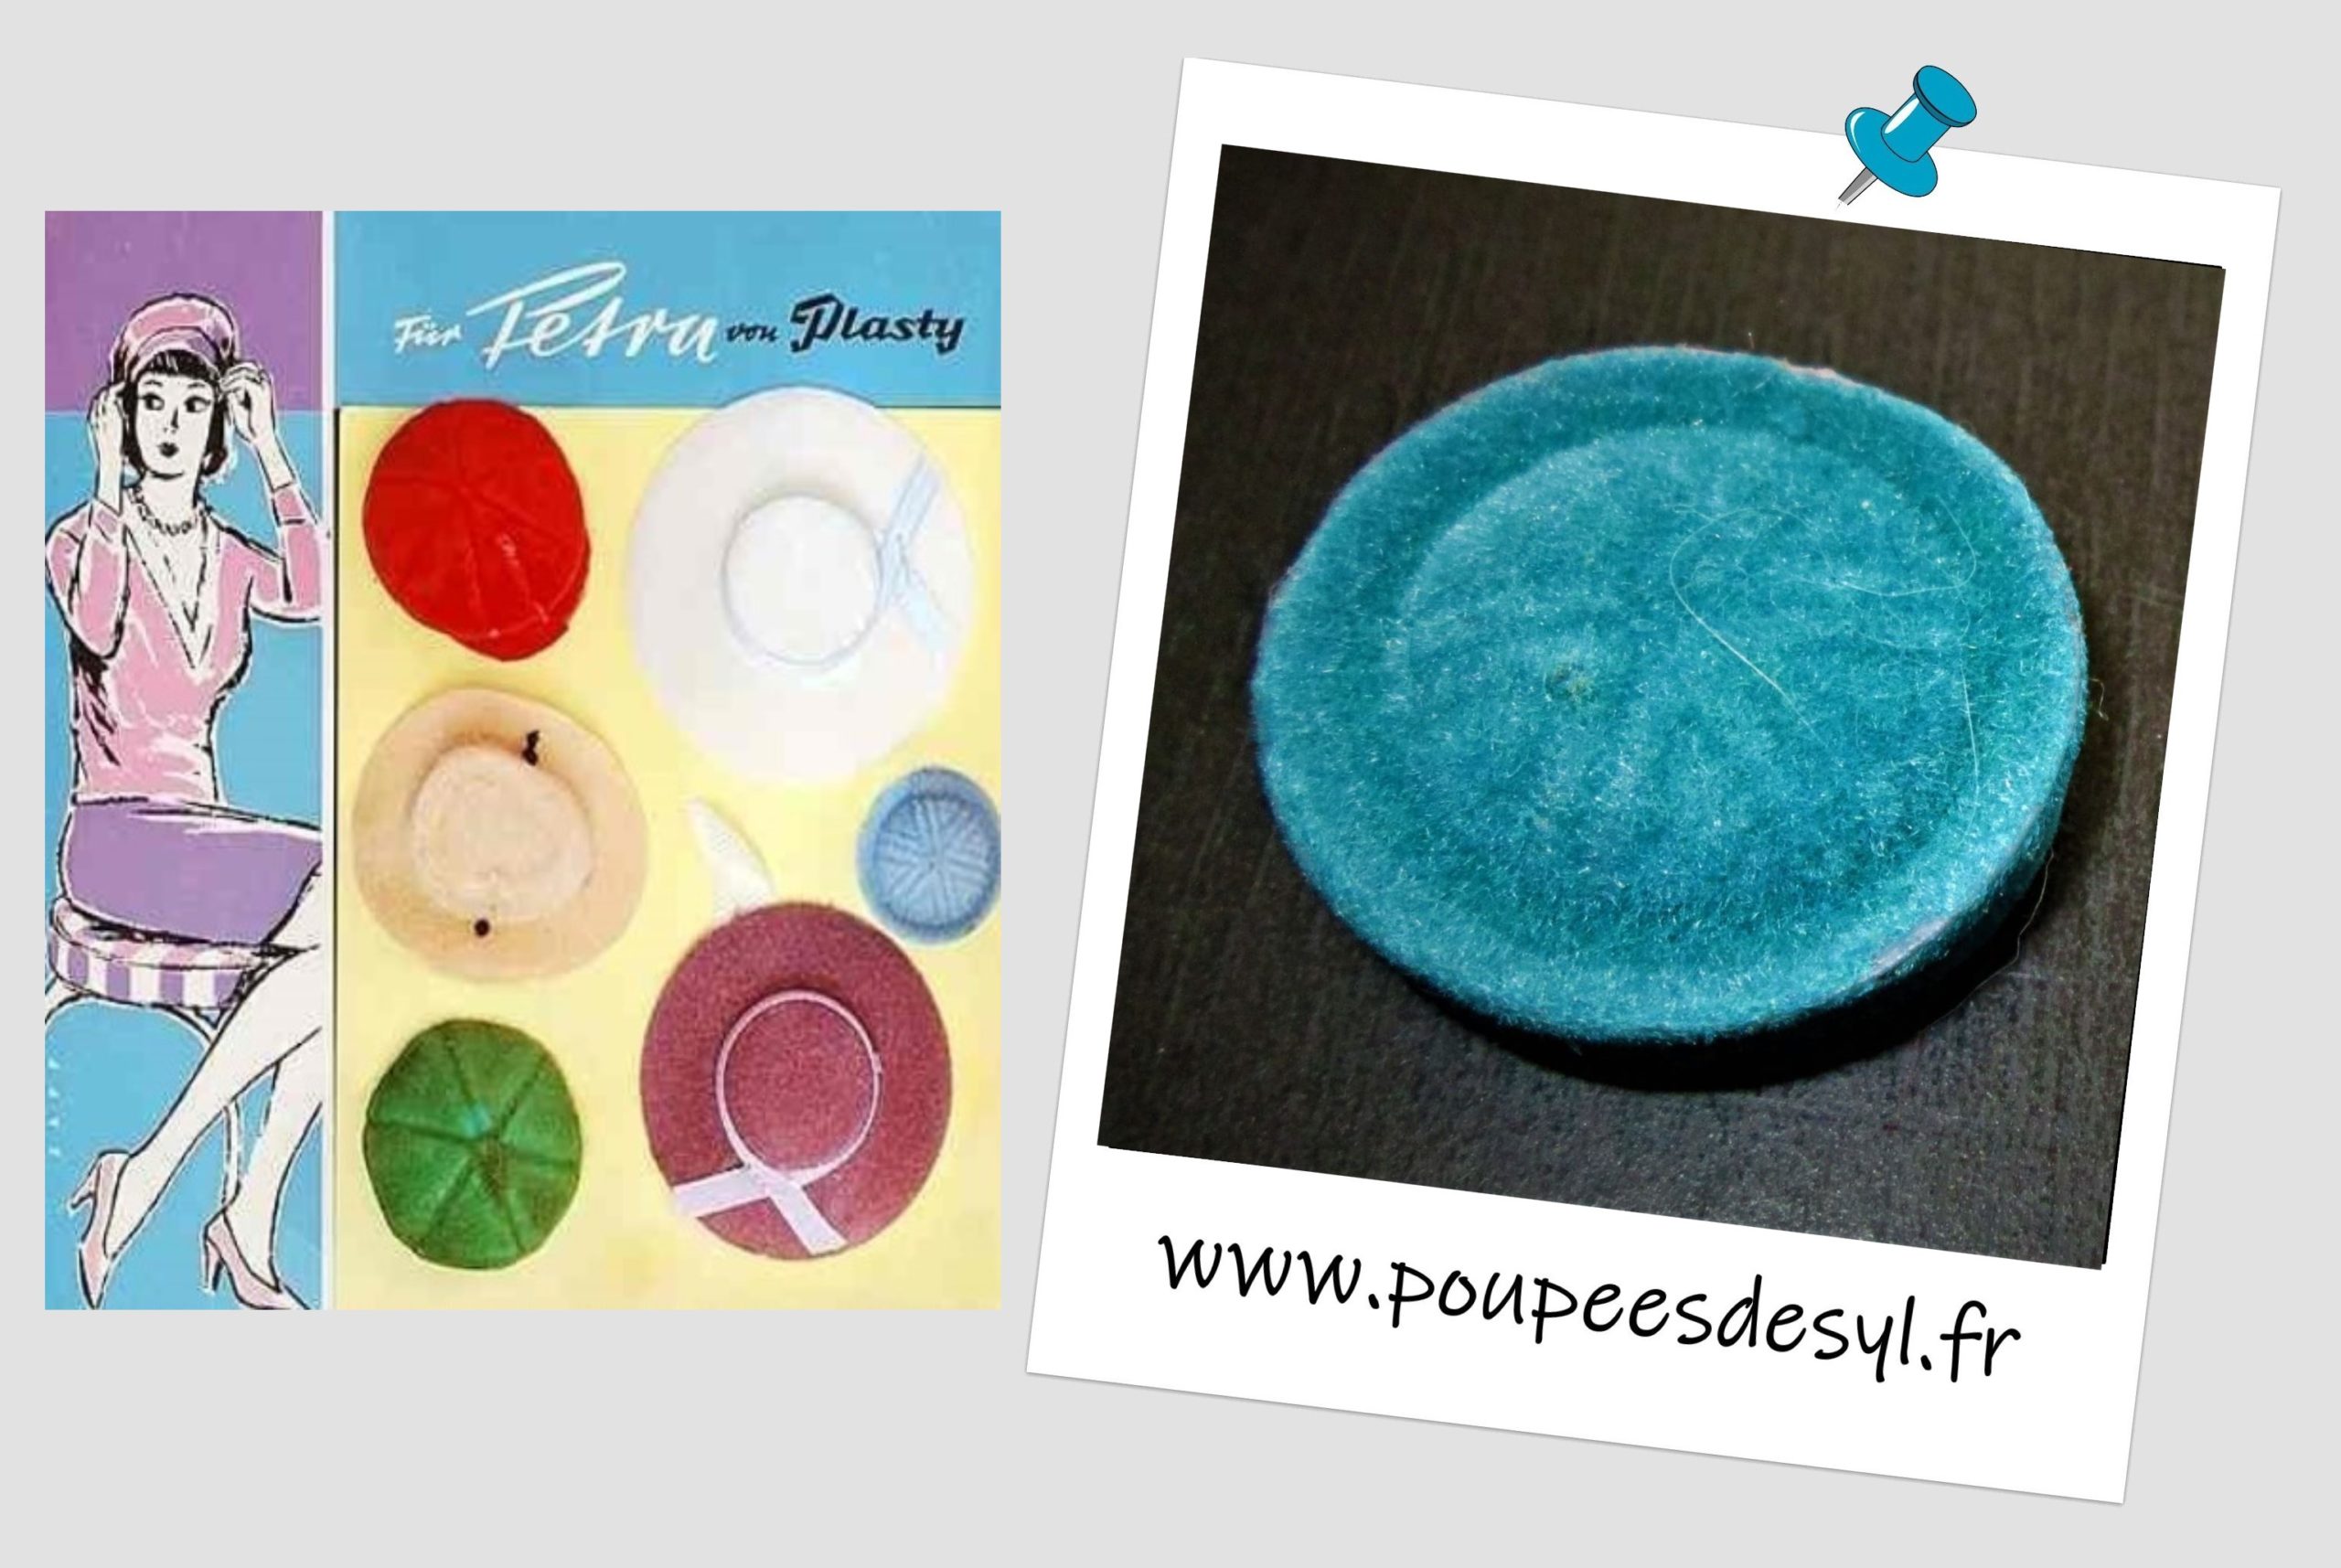 PETRA PLASTY – Chapeau bleu turquoise – Partie de set – 70/80